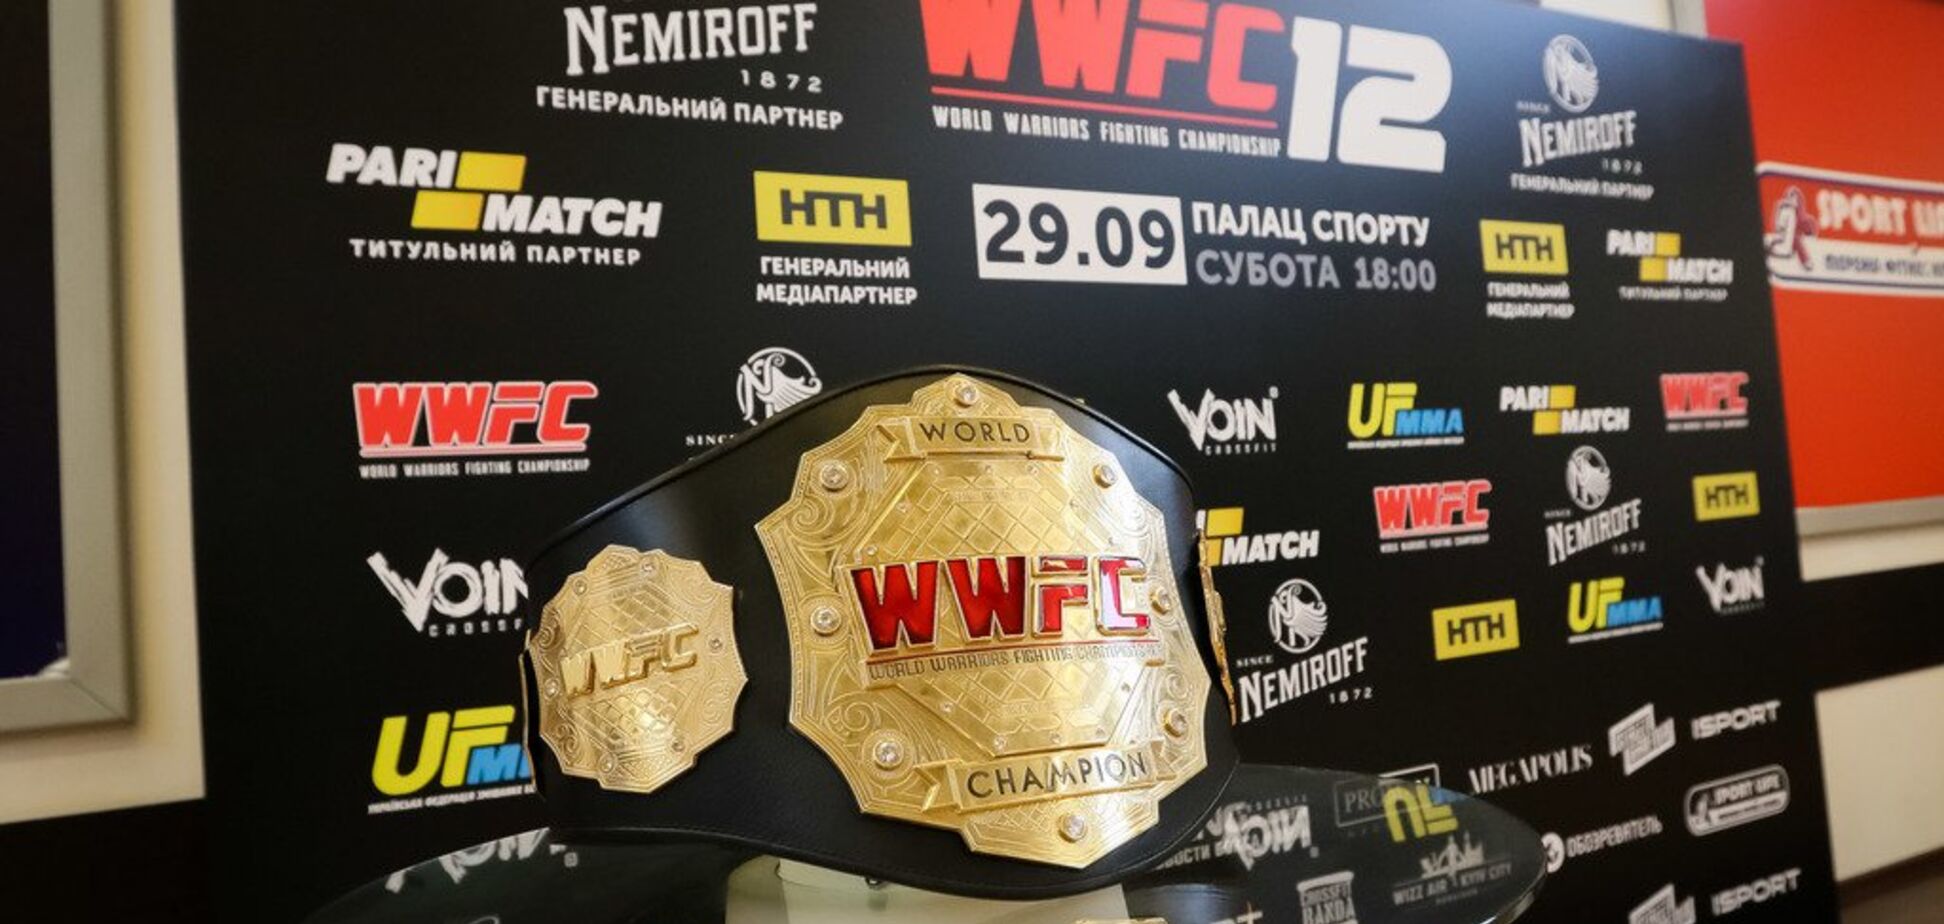 Открытая тренировка участников турнира  WWFC 12 состоится в Киеве